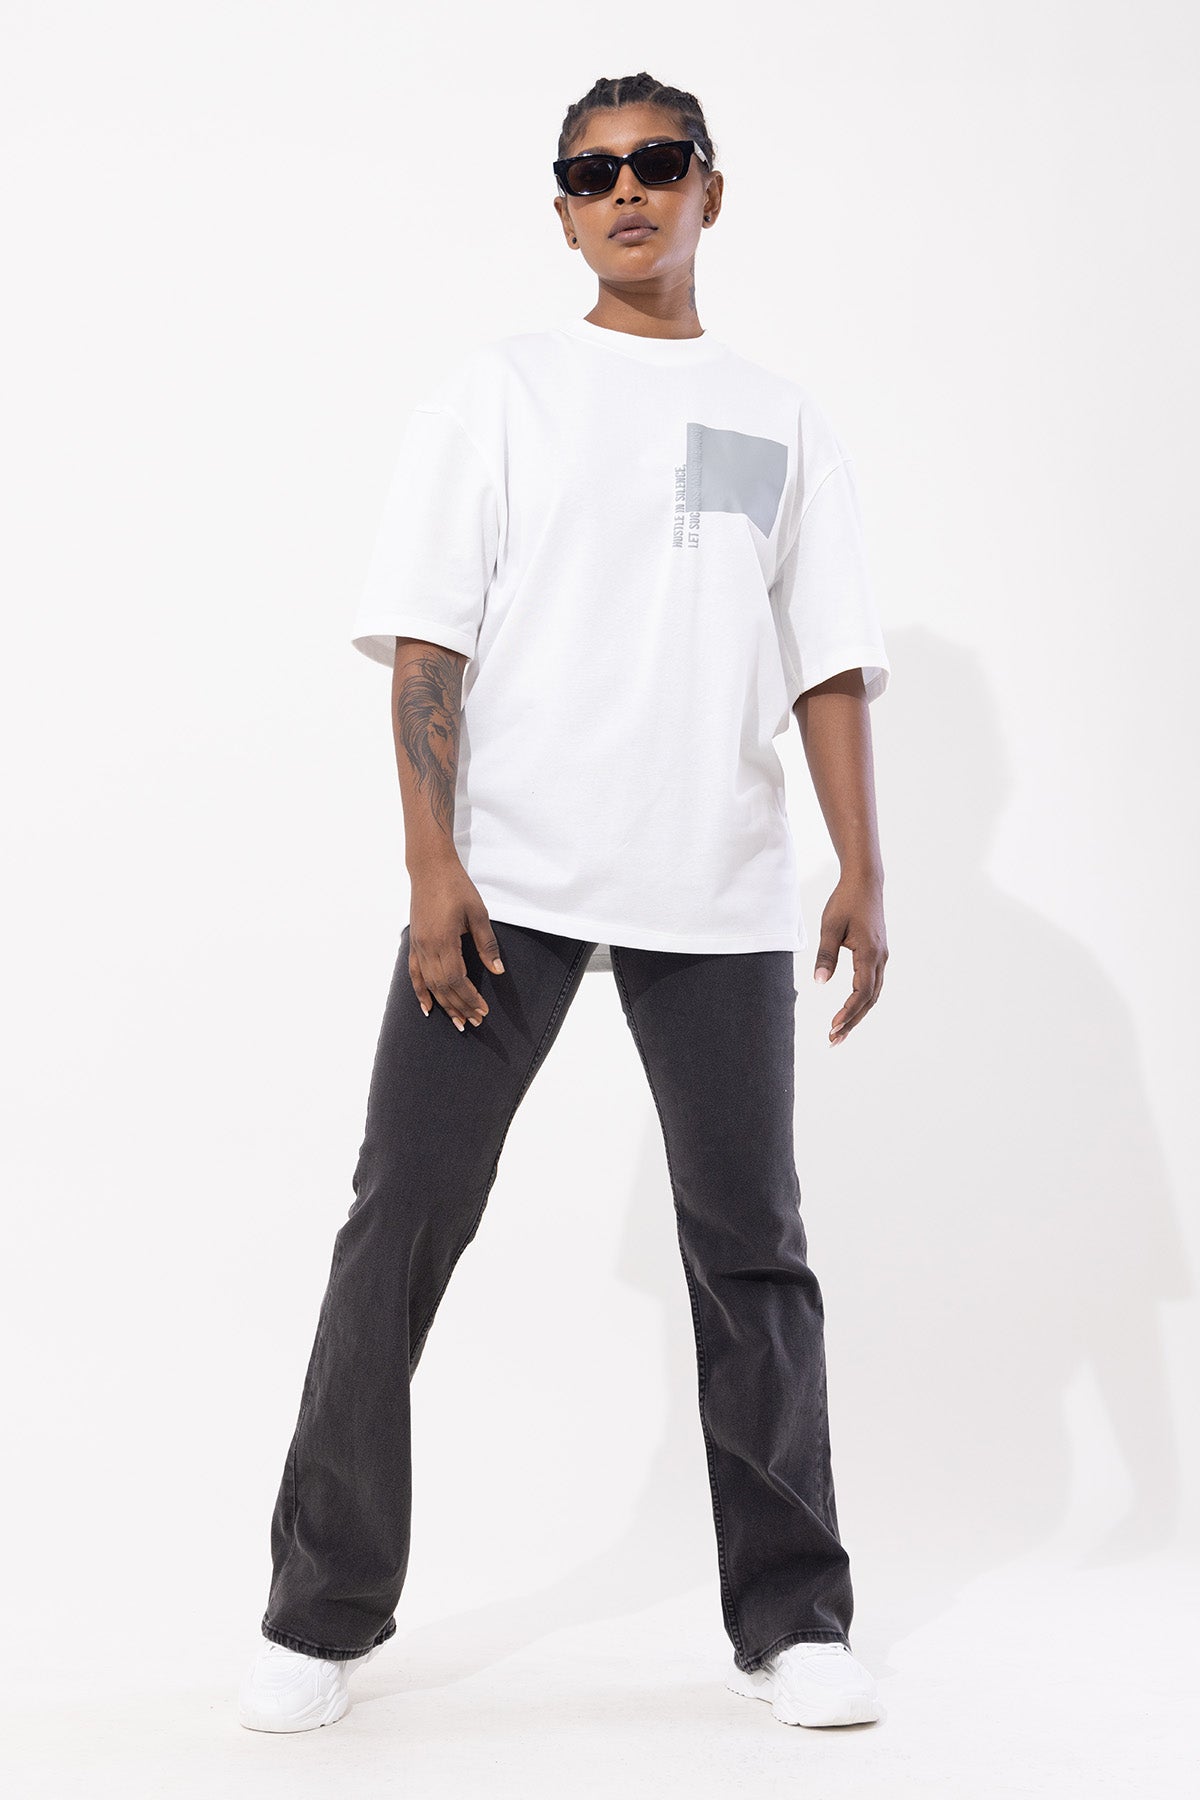 Hustle Men's Short Sleeve Oversized Casual T-Shirt